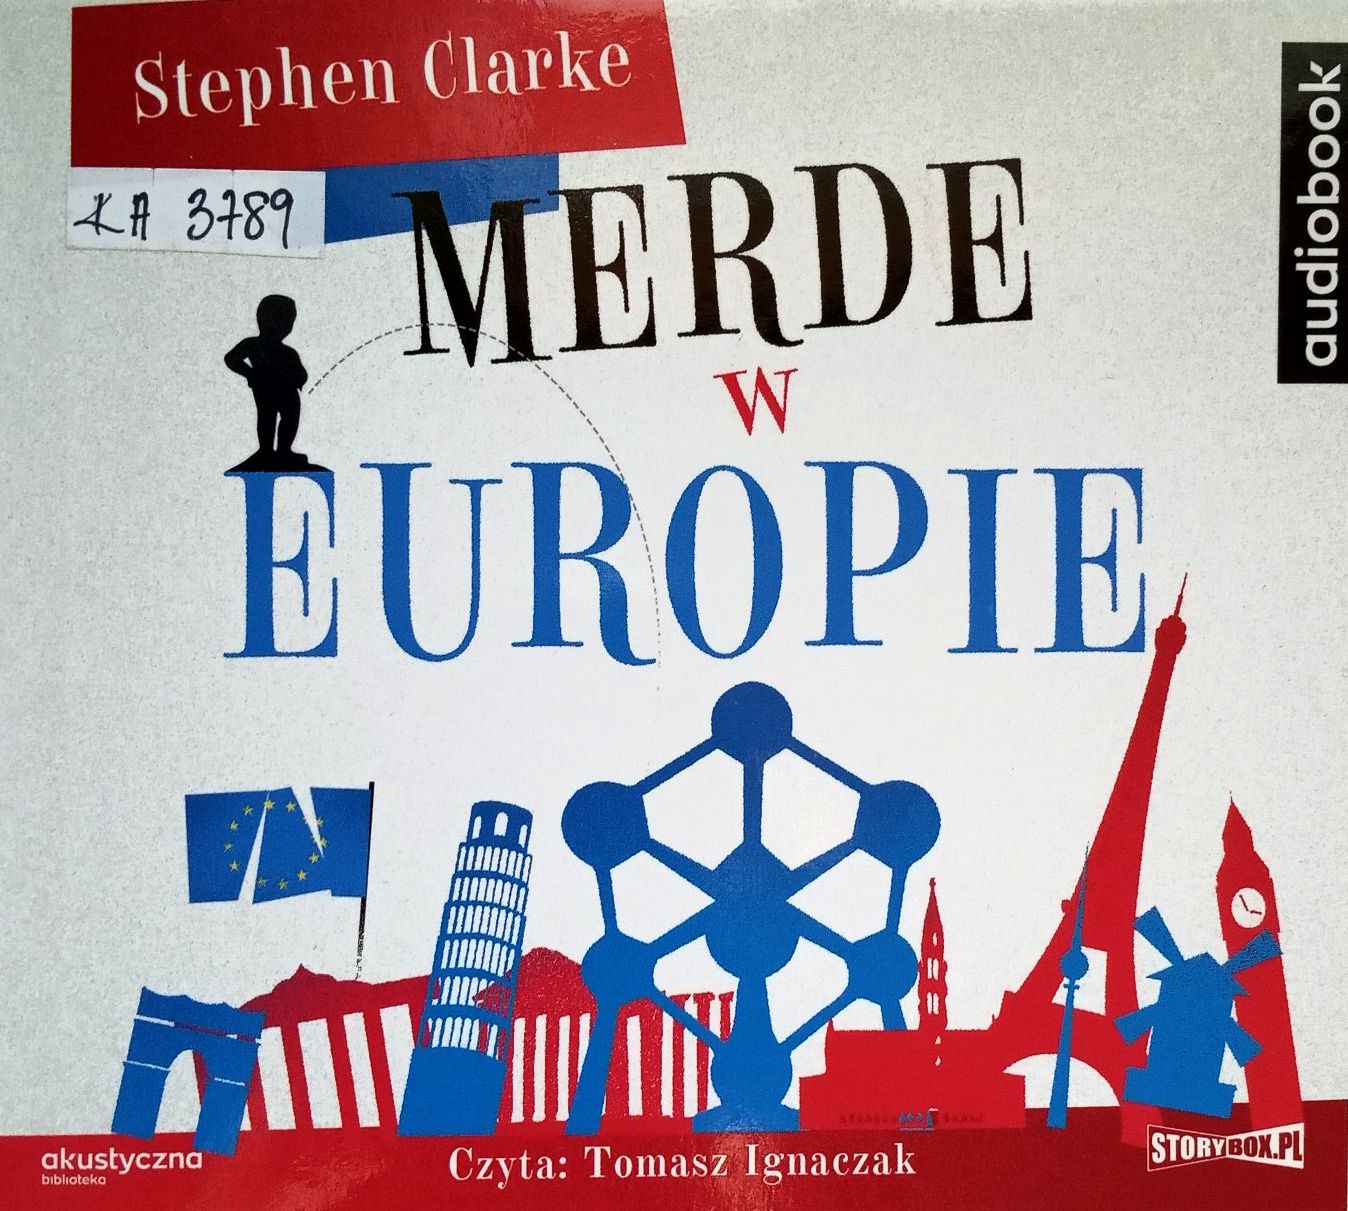 CLARKE STEPHEN – MERDE! 6. MERDE W EUROPIE